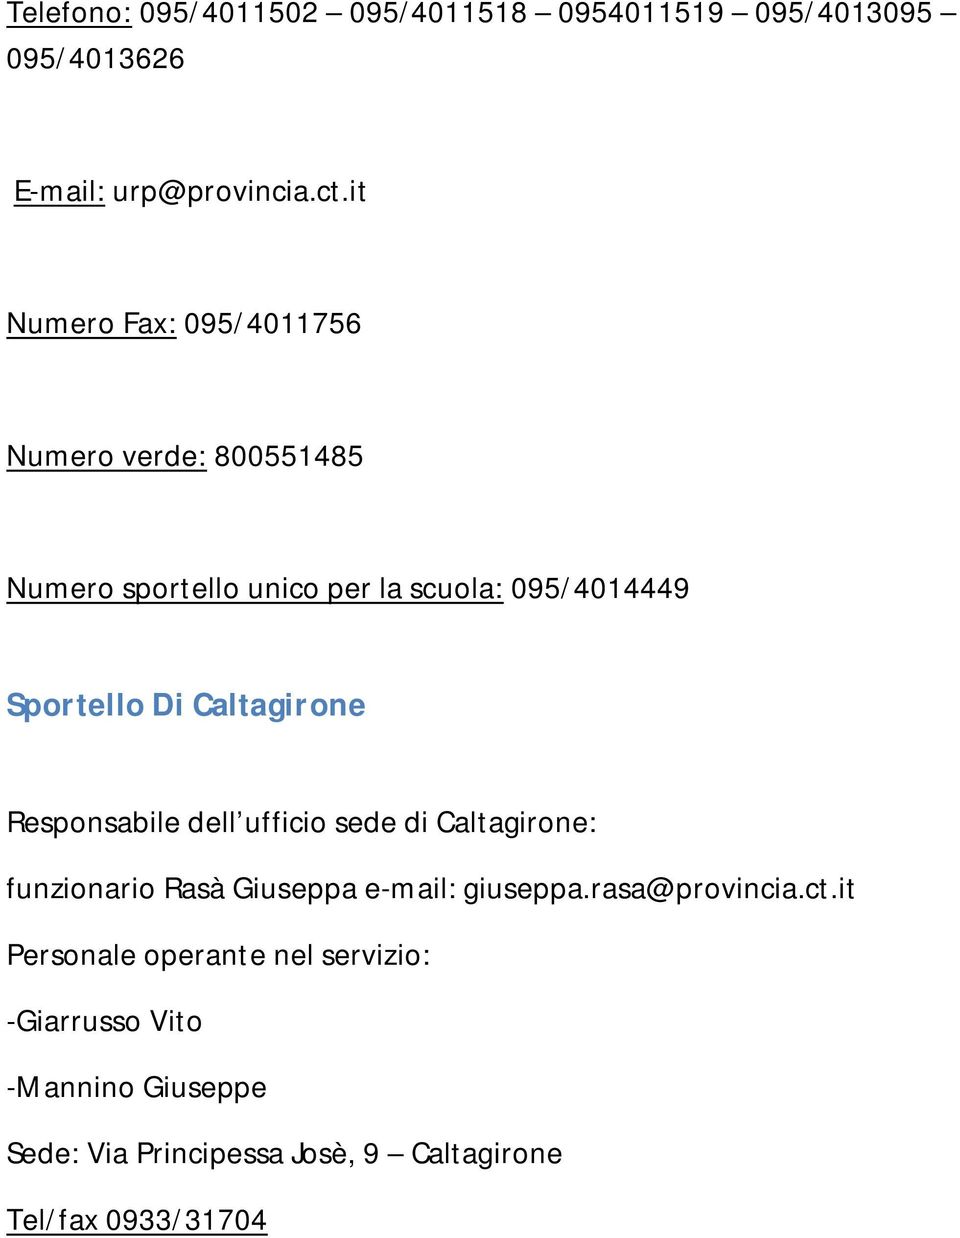 Caltagirone Responsabile dell ufficio sede di Caltagirone: funzionario Rasà Giuseppa e-mail: giuseppa.